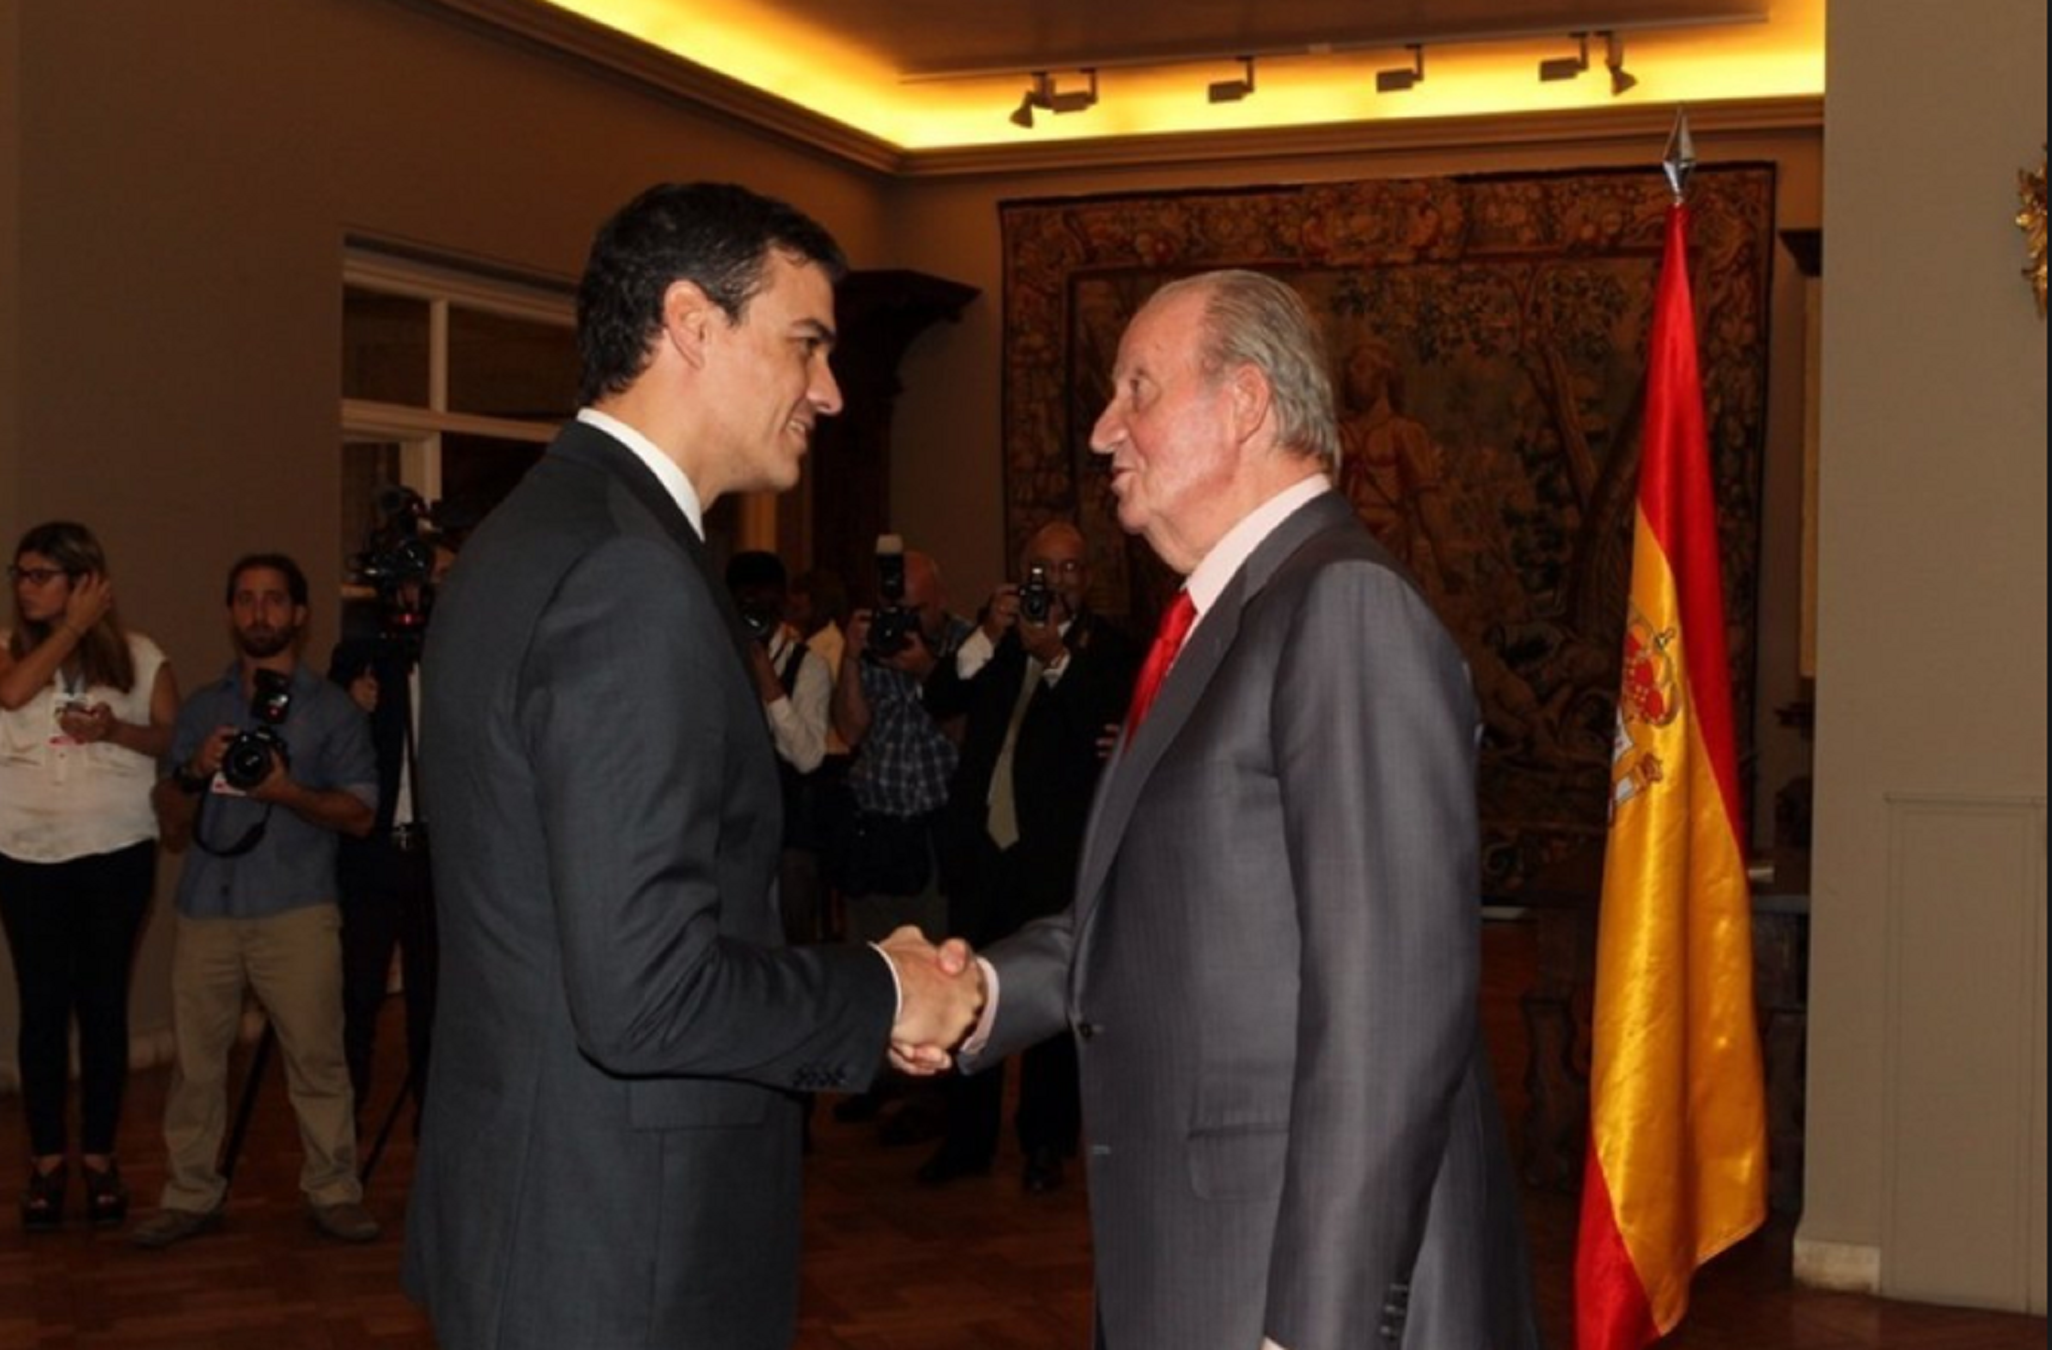 Pedro Sánchez tilda de "ejemplar" al rey Juan Carlos y la red explota